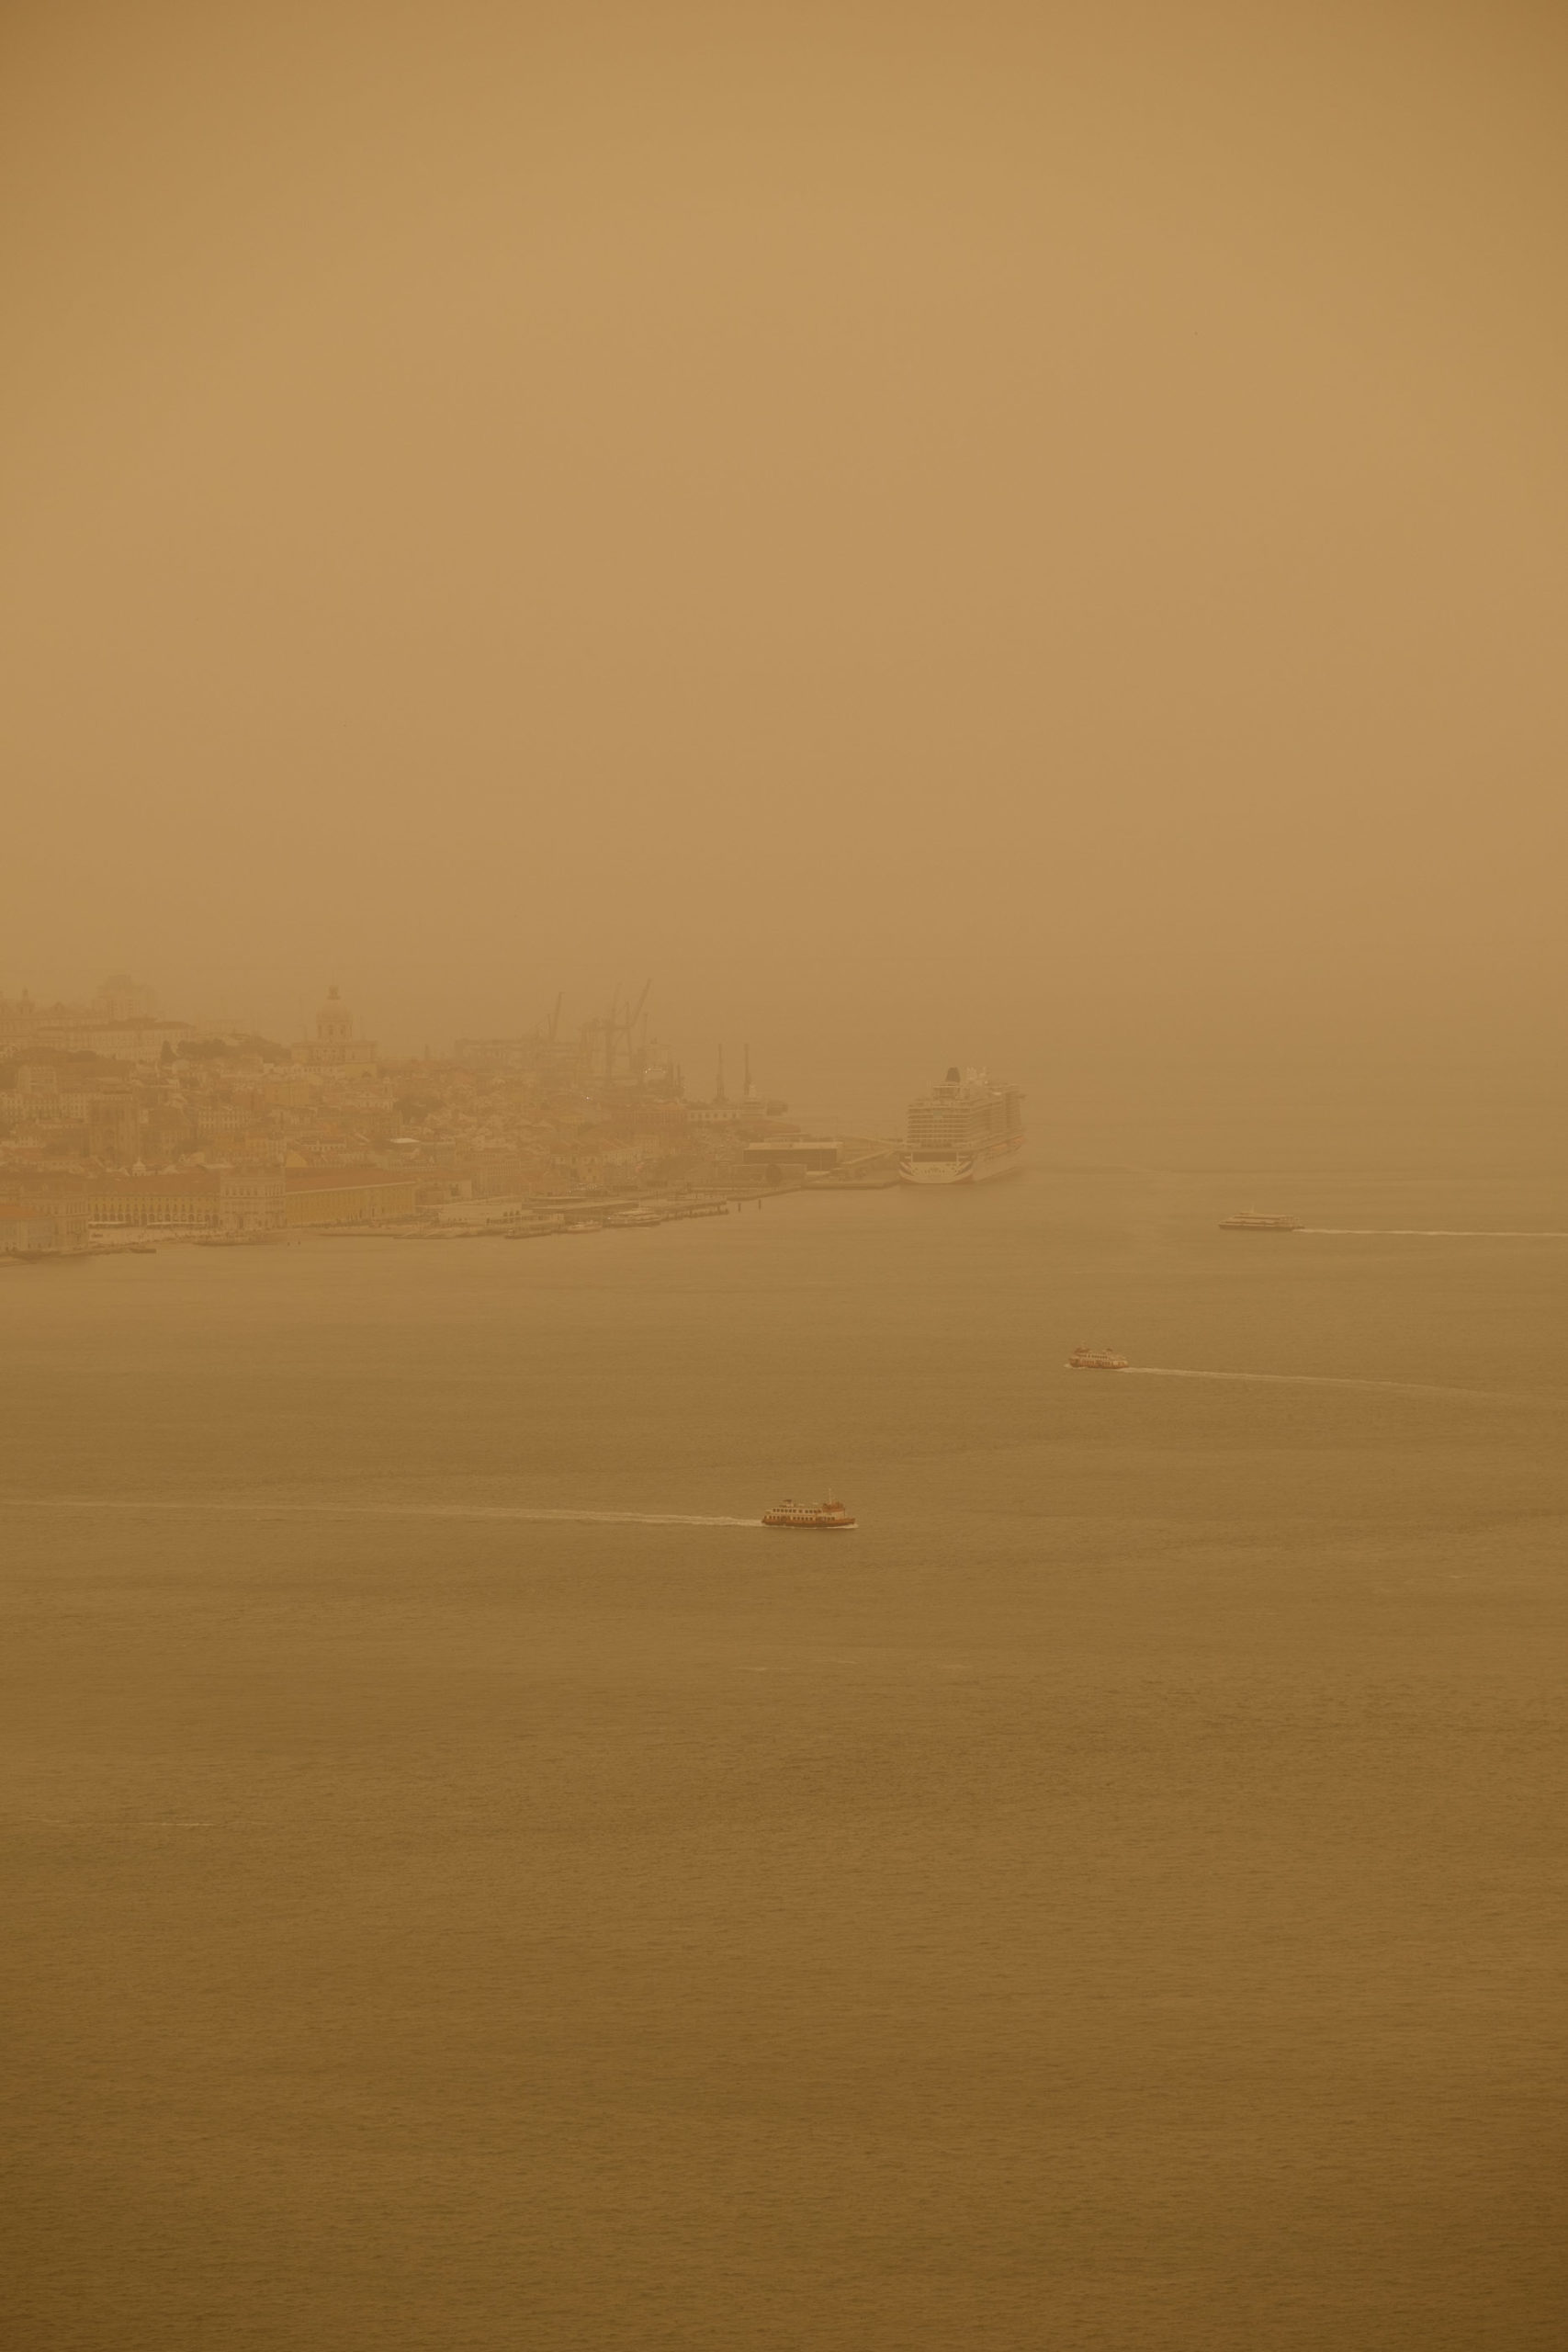 Lisbon seen during a saharian dust episode